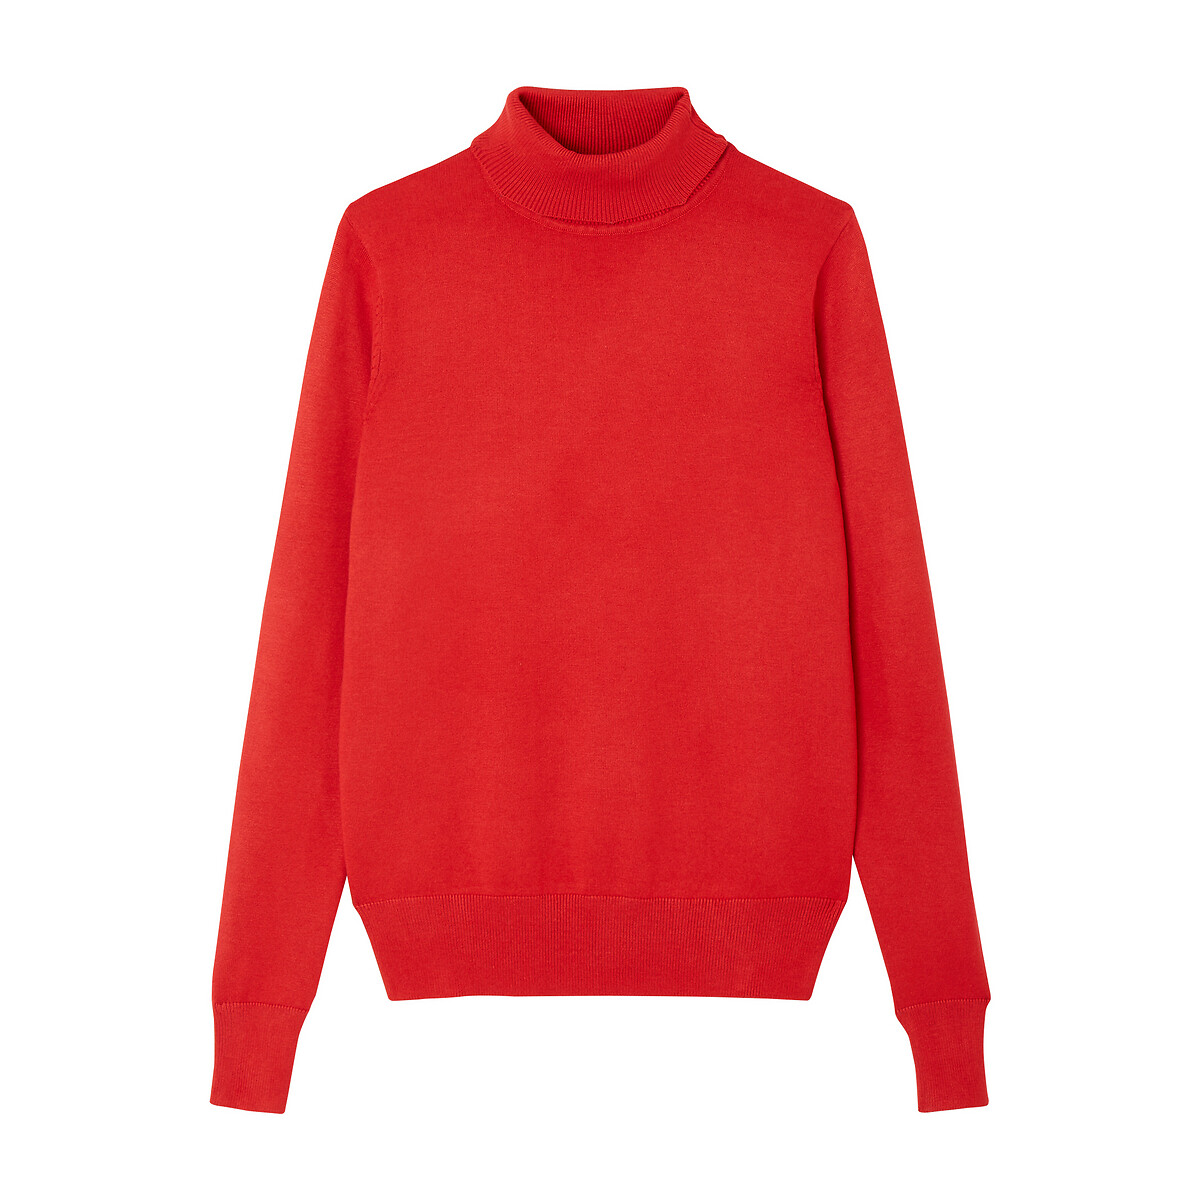 Пуловер La Redoute С воротником-воронка базовая модель S красный, размер S - фото 5